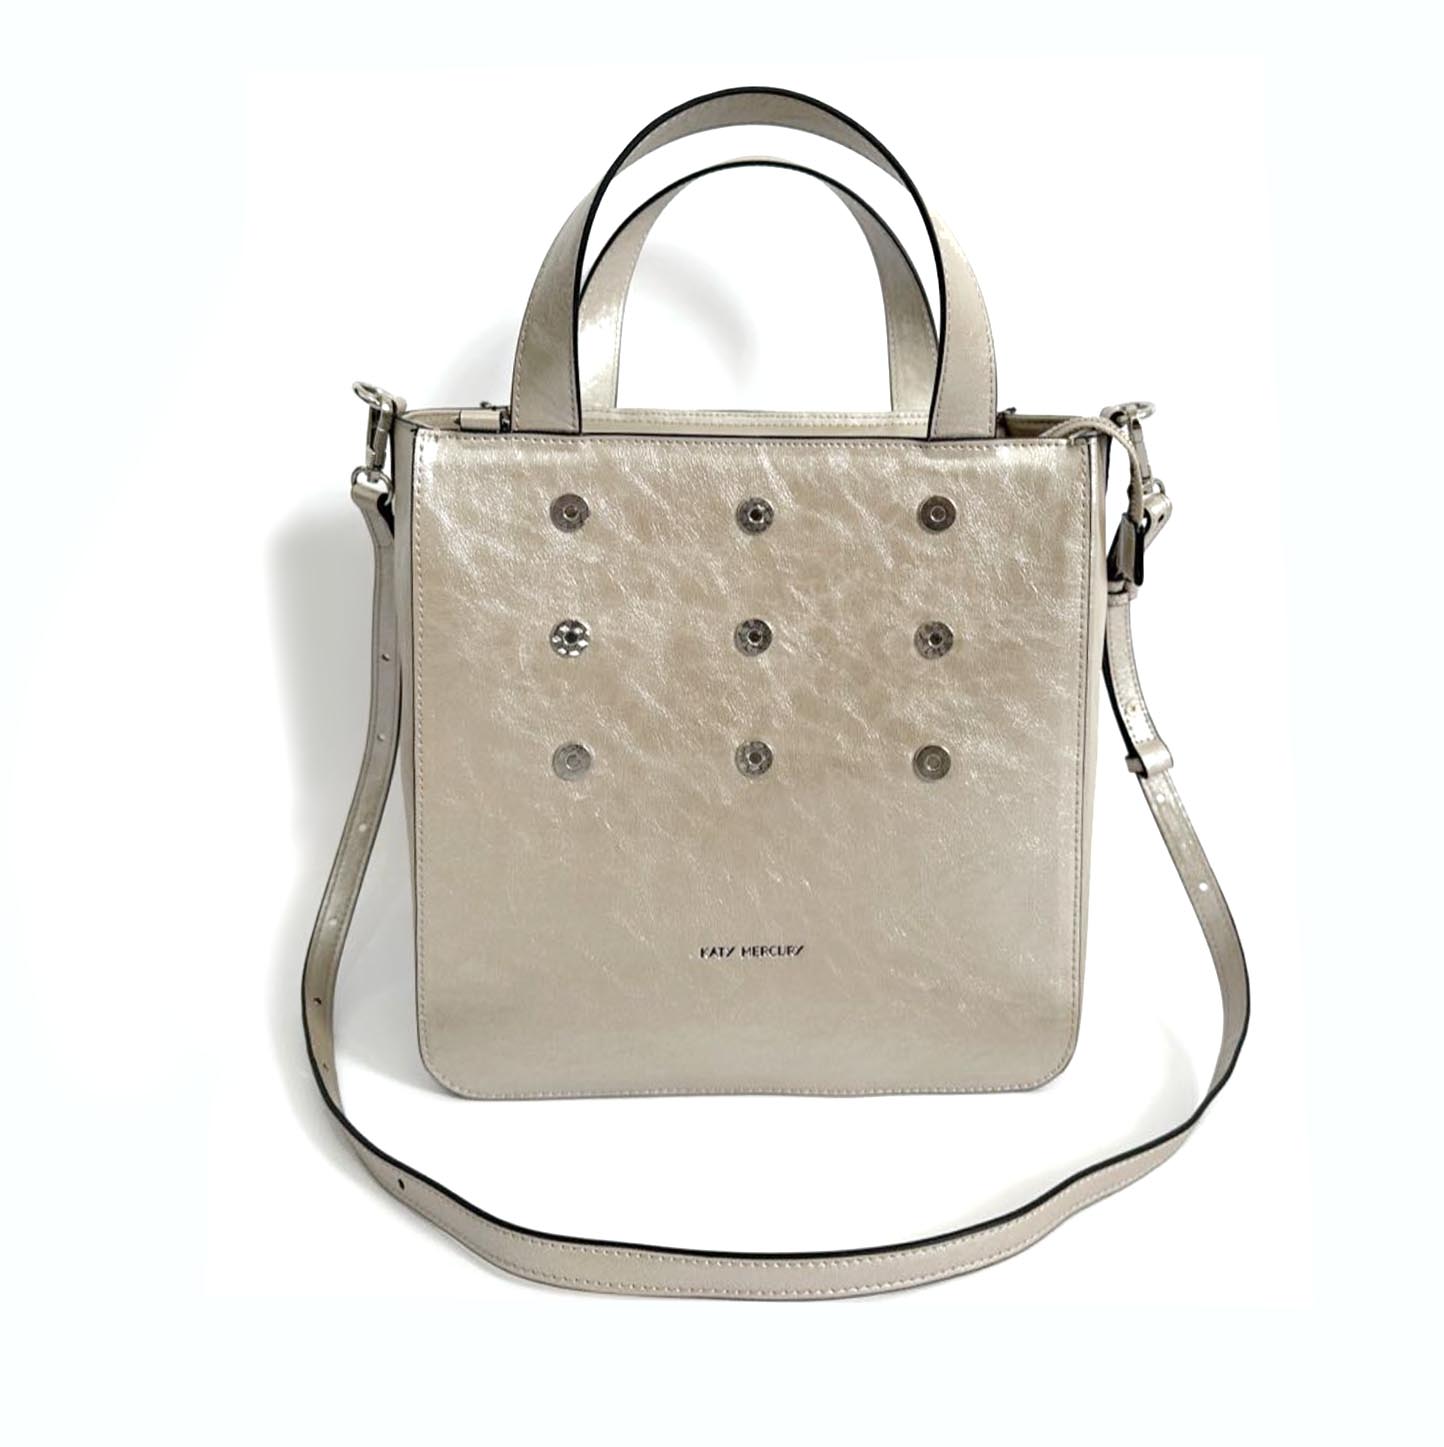 KATY MERCURY Medium Bucket Bag stehender Shopper Tasche Umhängetasche Handtasche warm-silber beige-silber